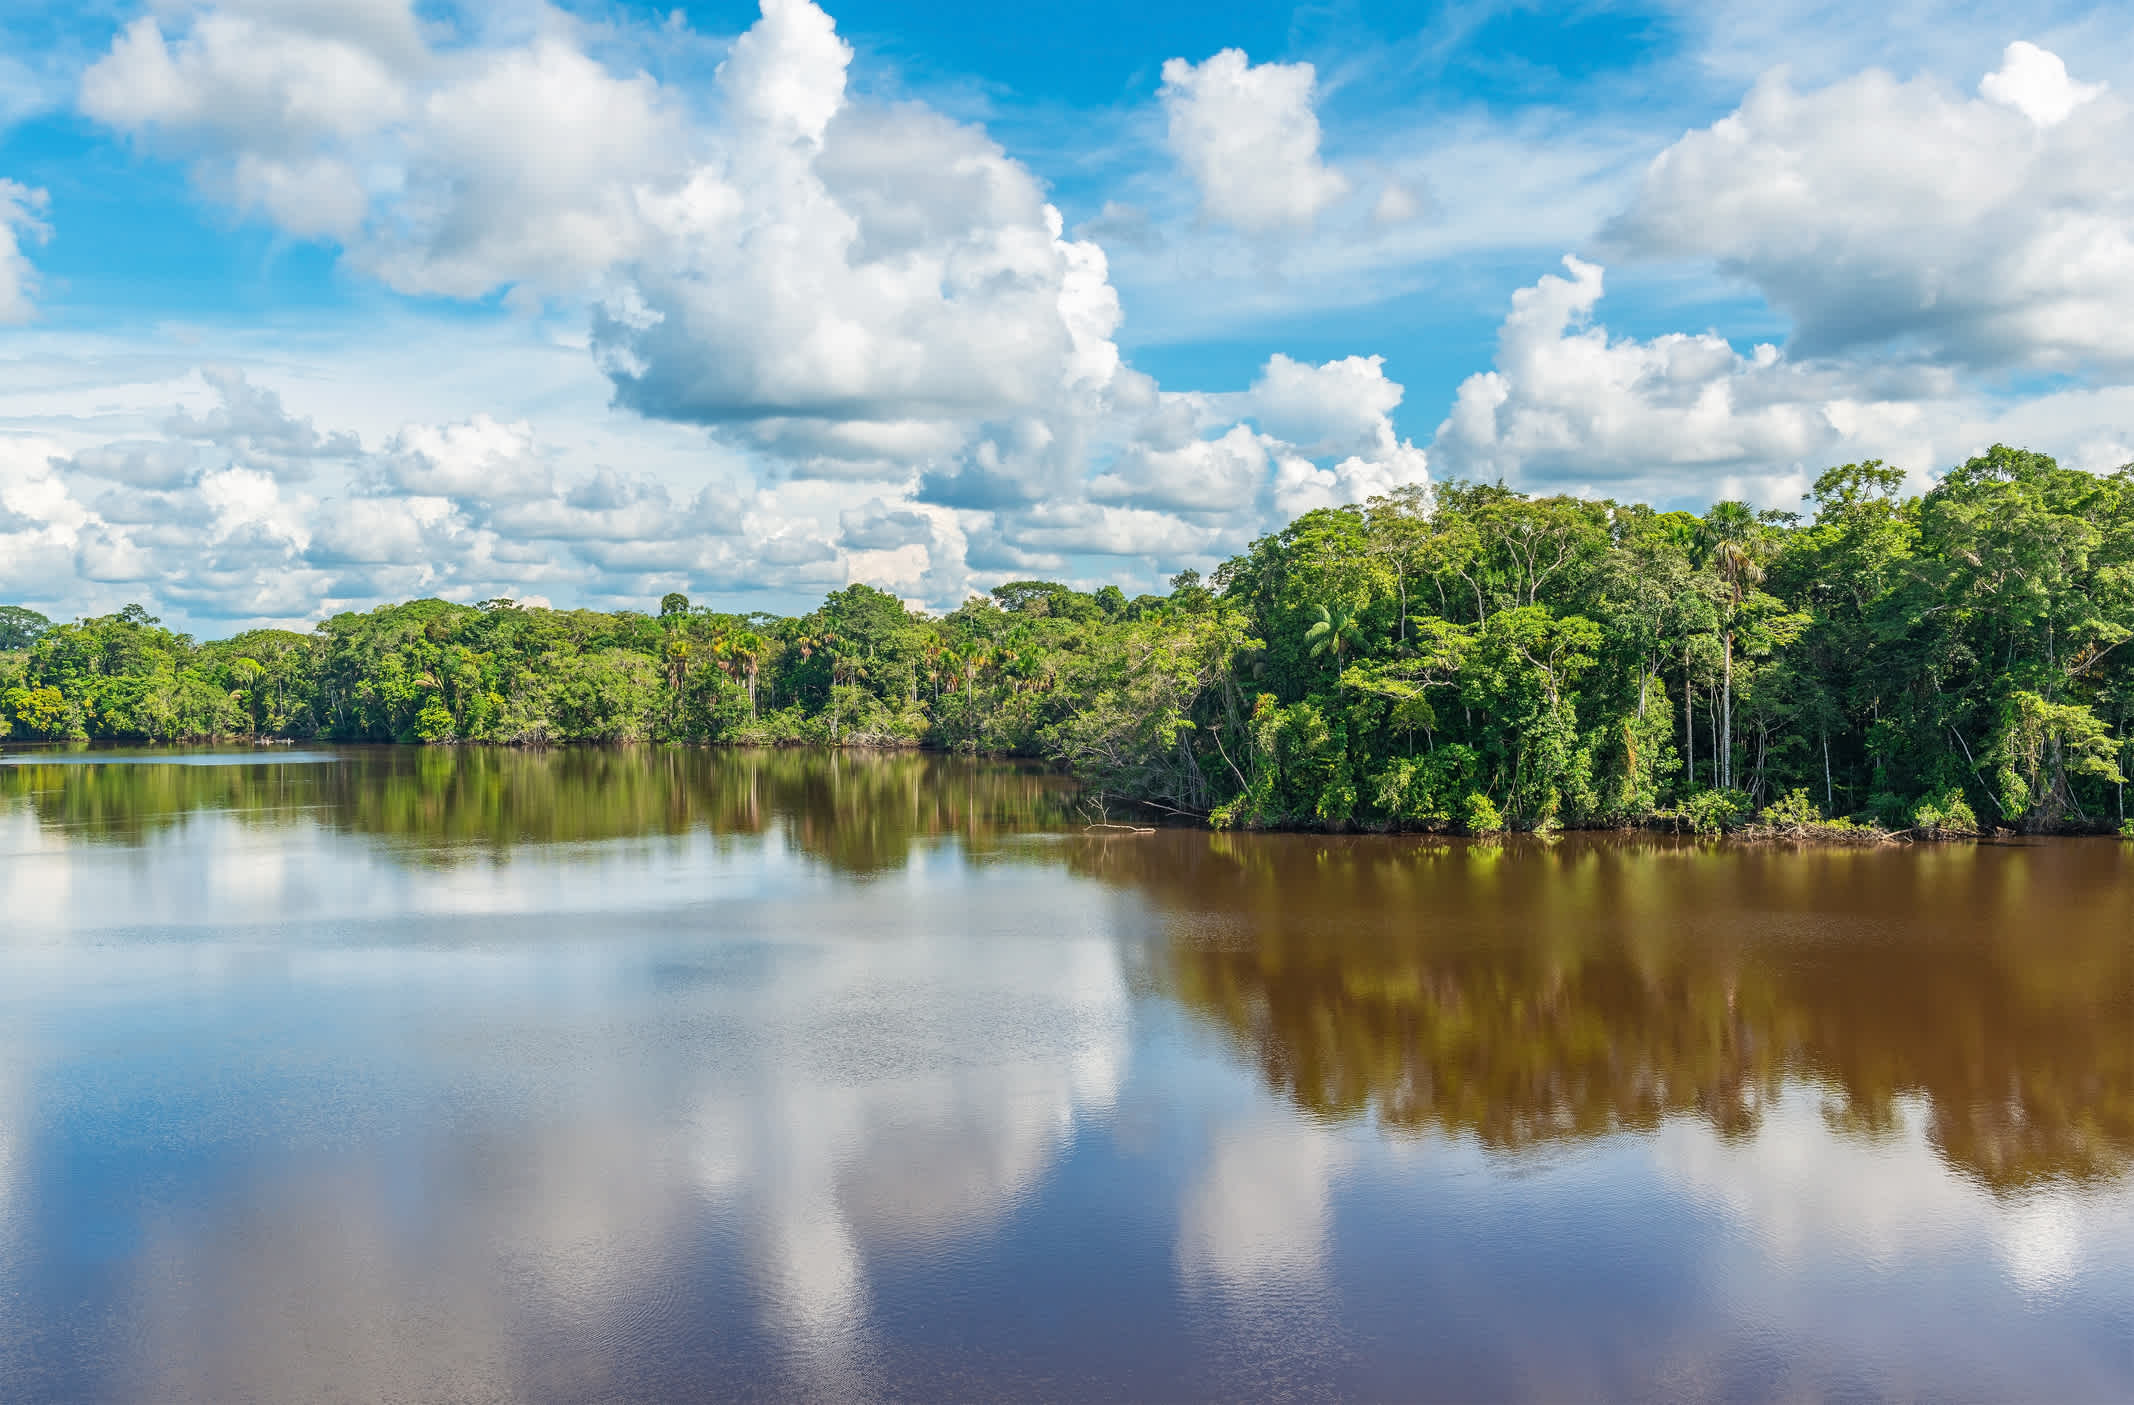 Rivière bordée de végétation dans la forêt amazonienne, en Équateur
